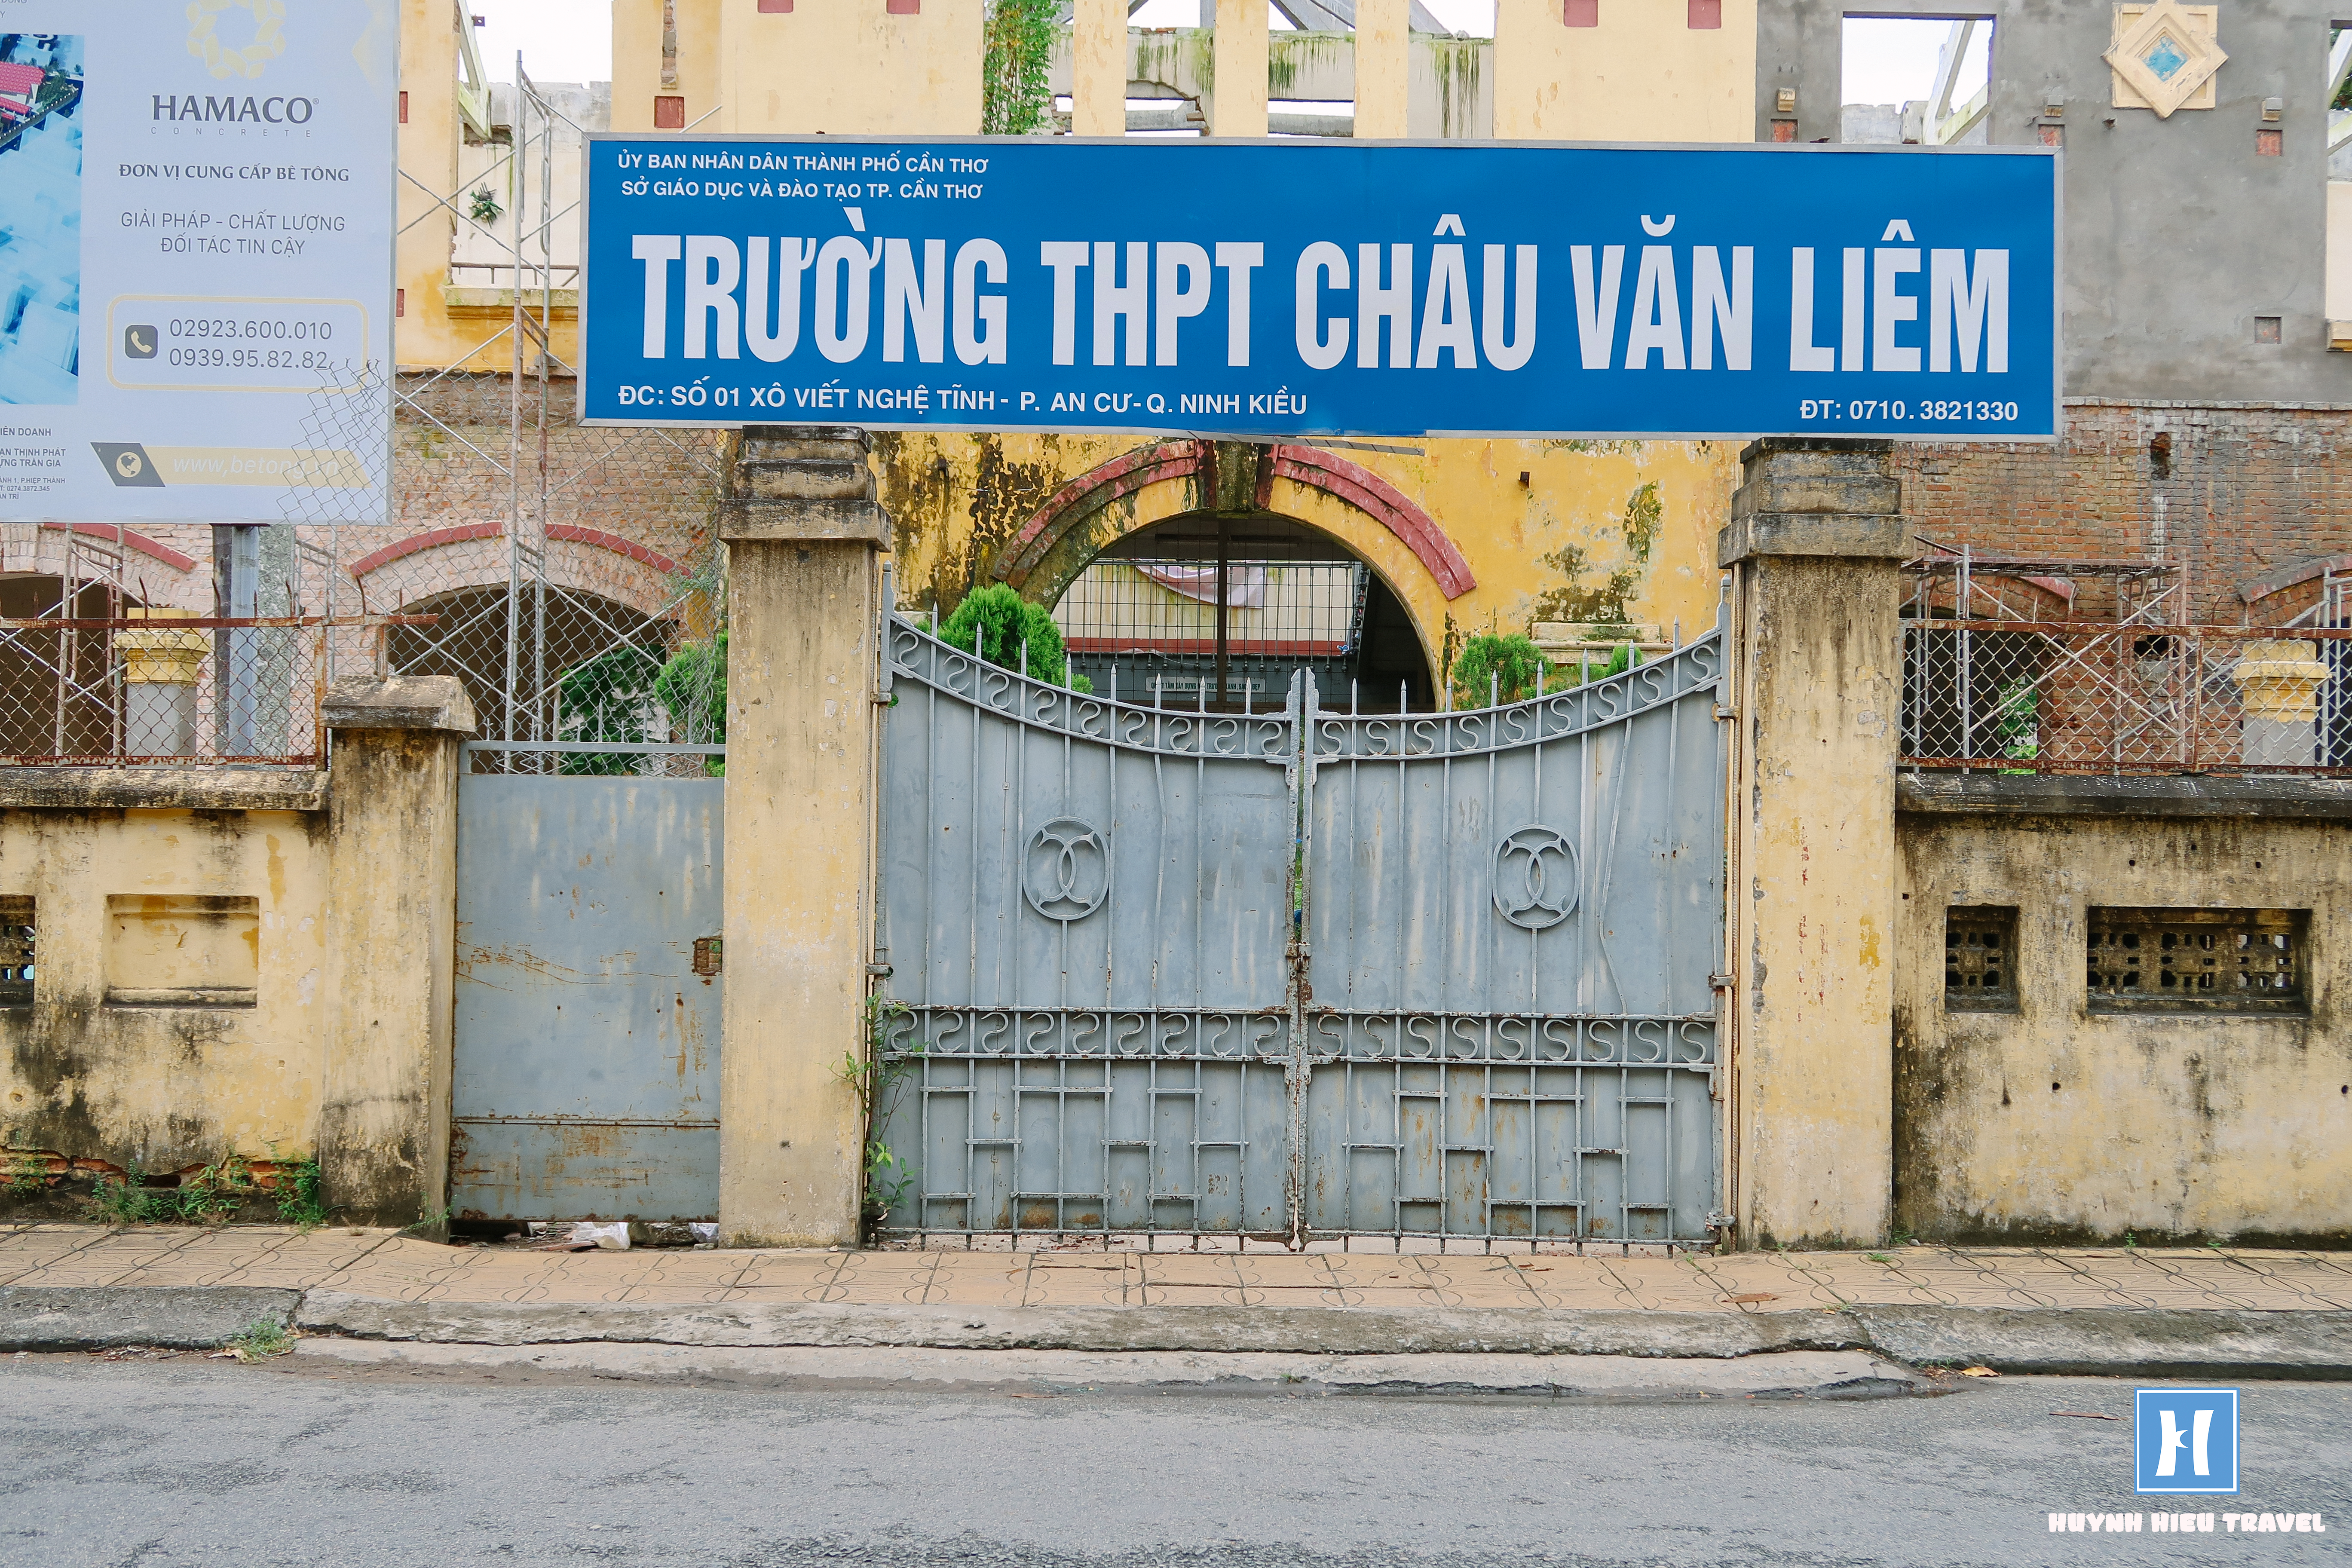 Trường THPT Phan Thanh Giản đã đổi tên thành Trường Châu Văn Liêm